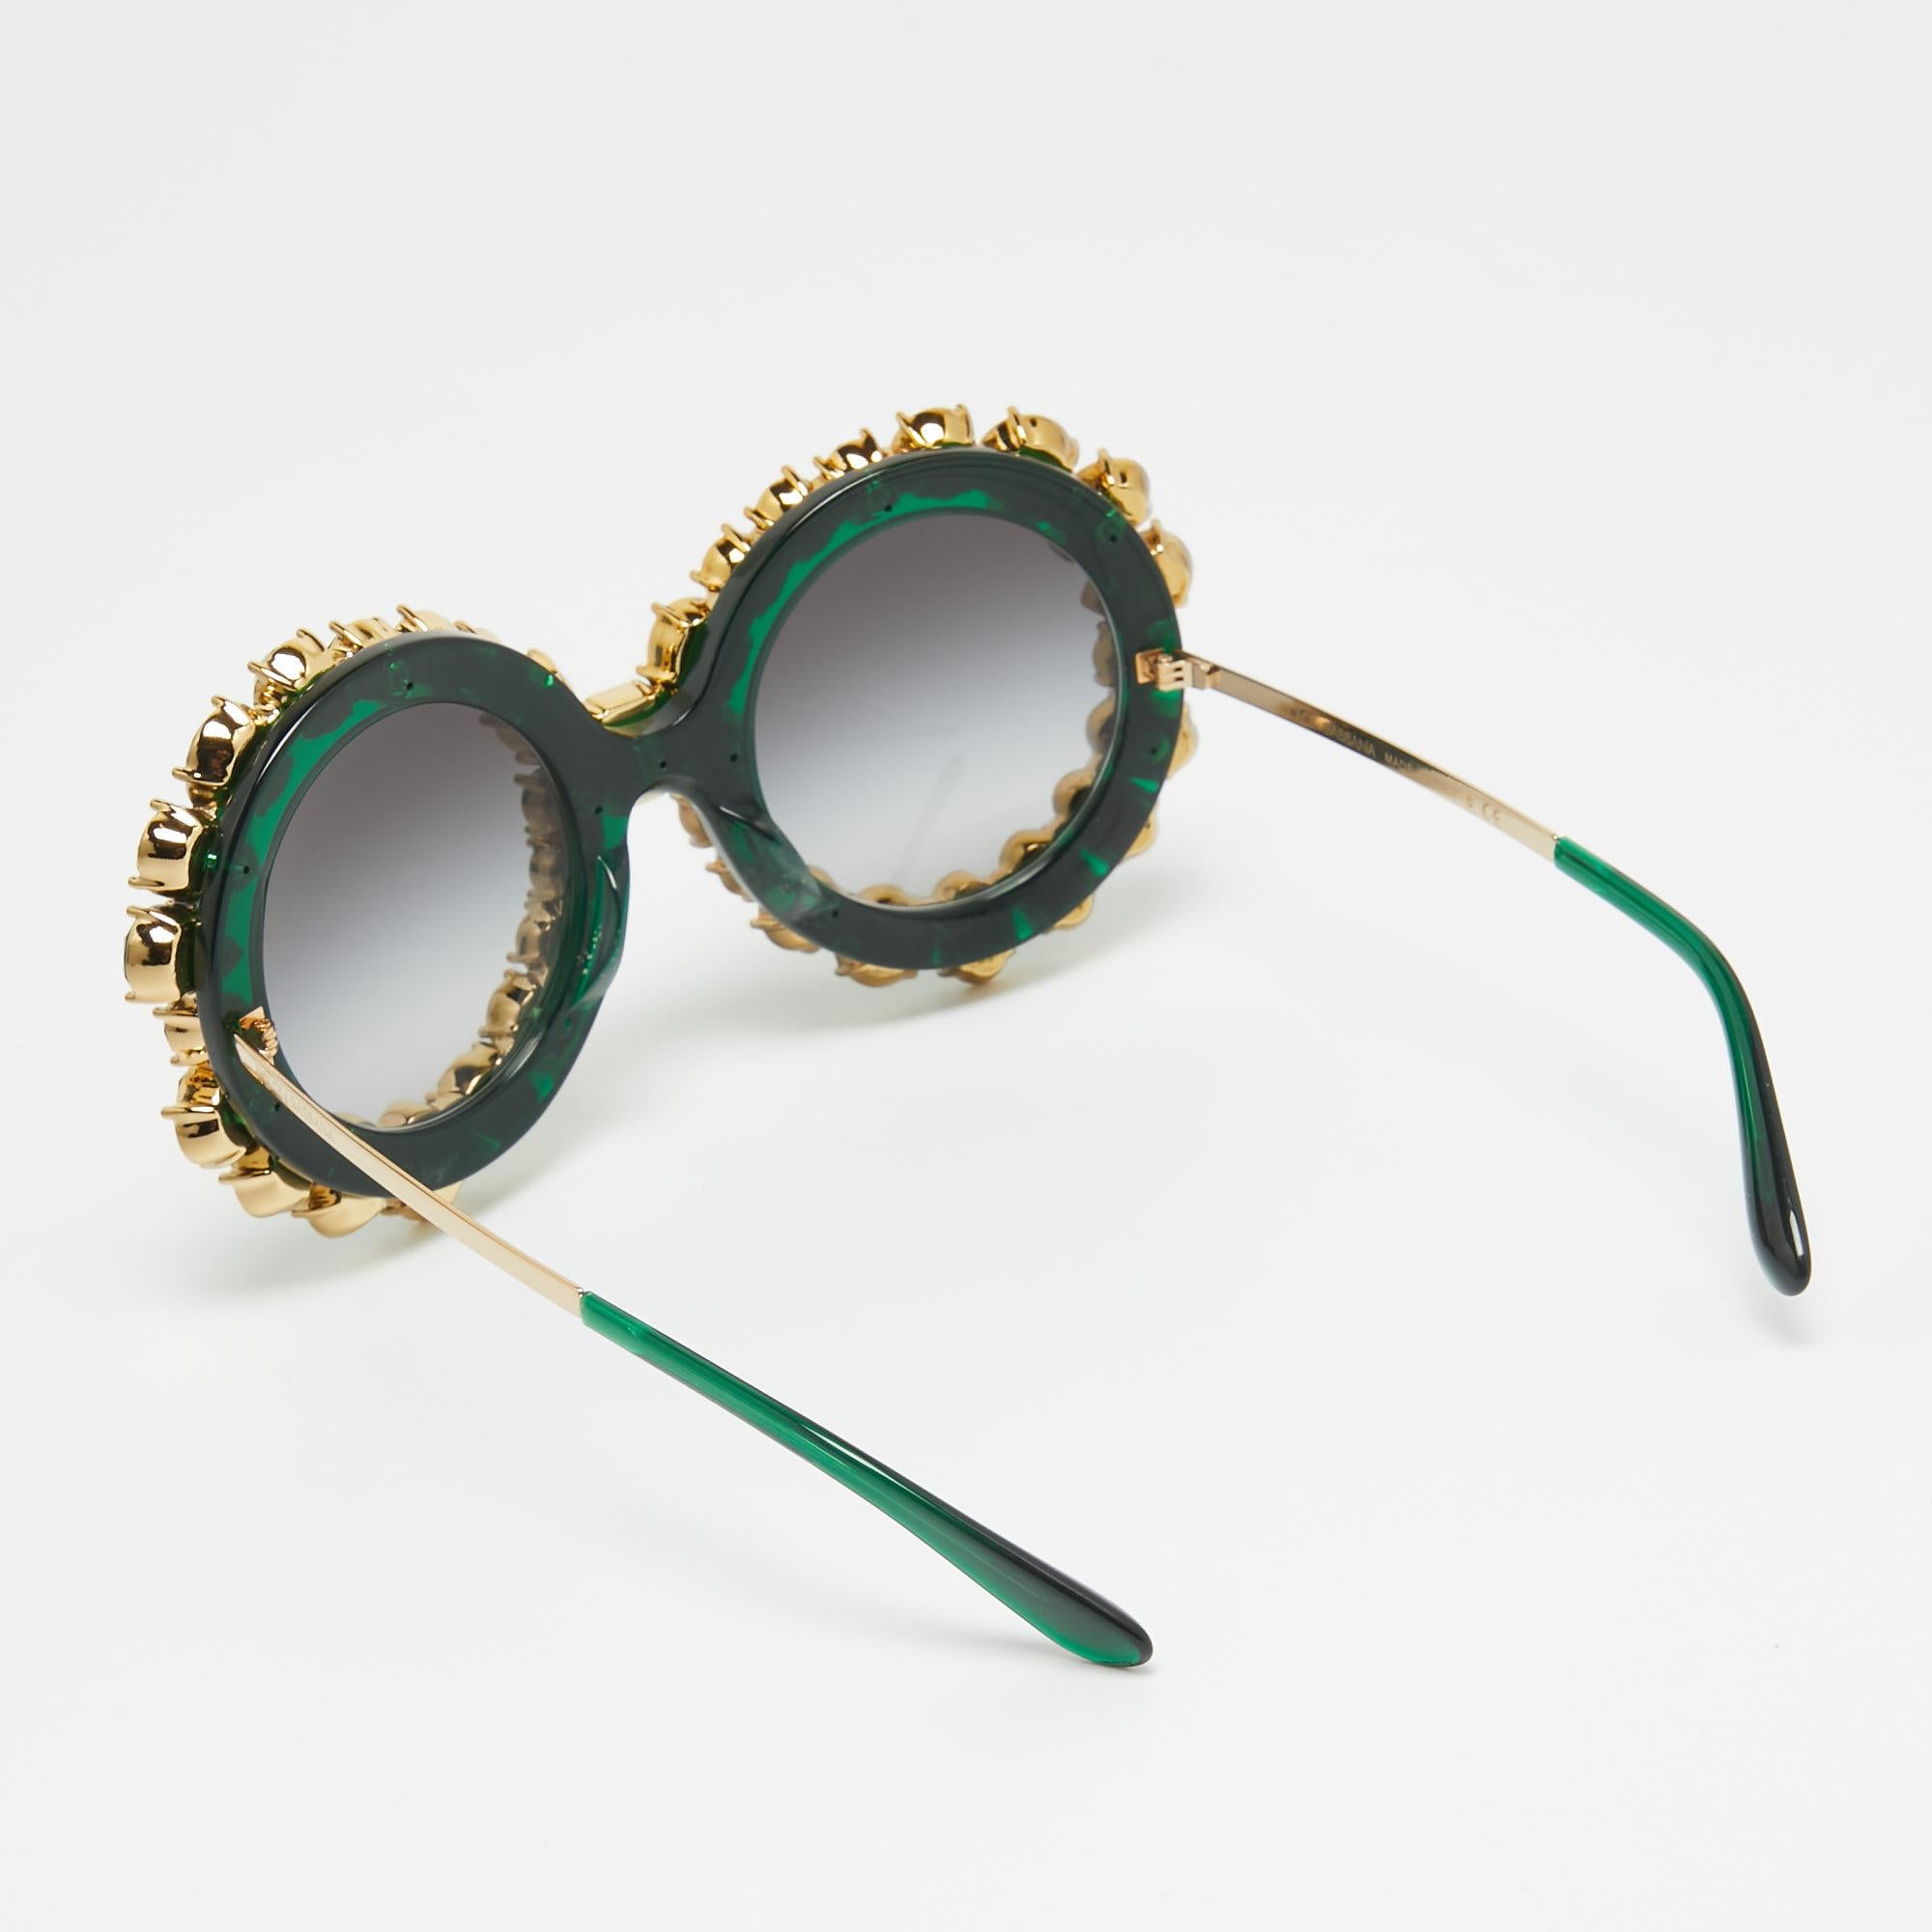 Conçues pour les avant-gardistes, les lunettes de soleil Dolce & Gabbana DG4291, édition limitée, exhalent l'opulence. Leurs montures rondes et élégantes, ornées de cristaux exquis, rayonnent d'élégance. Les verres verts dégradés offrent à la fois